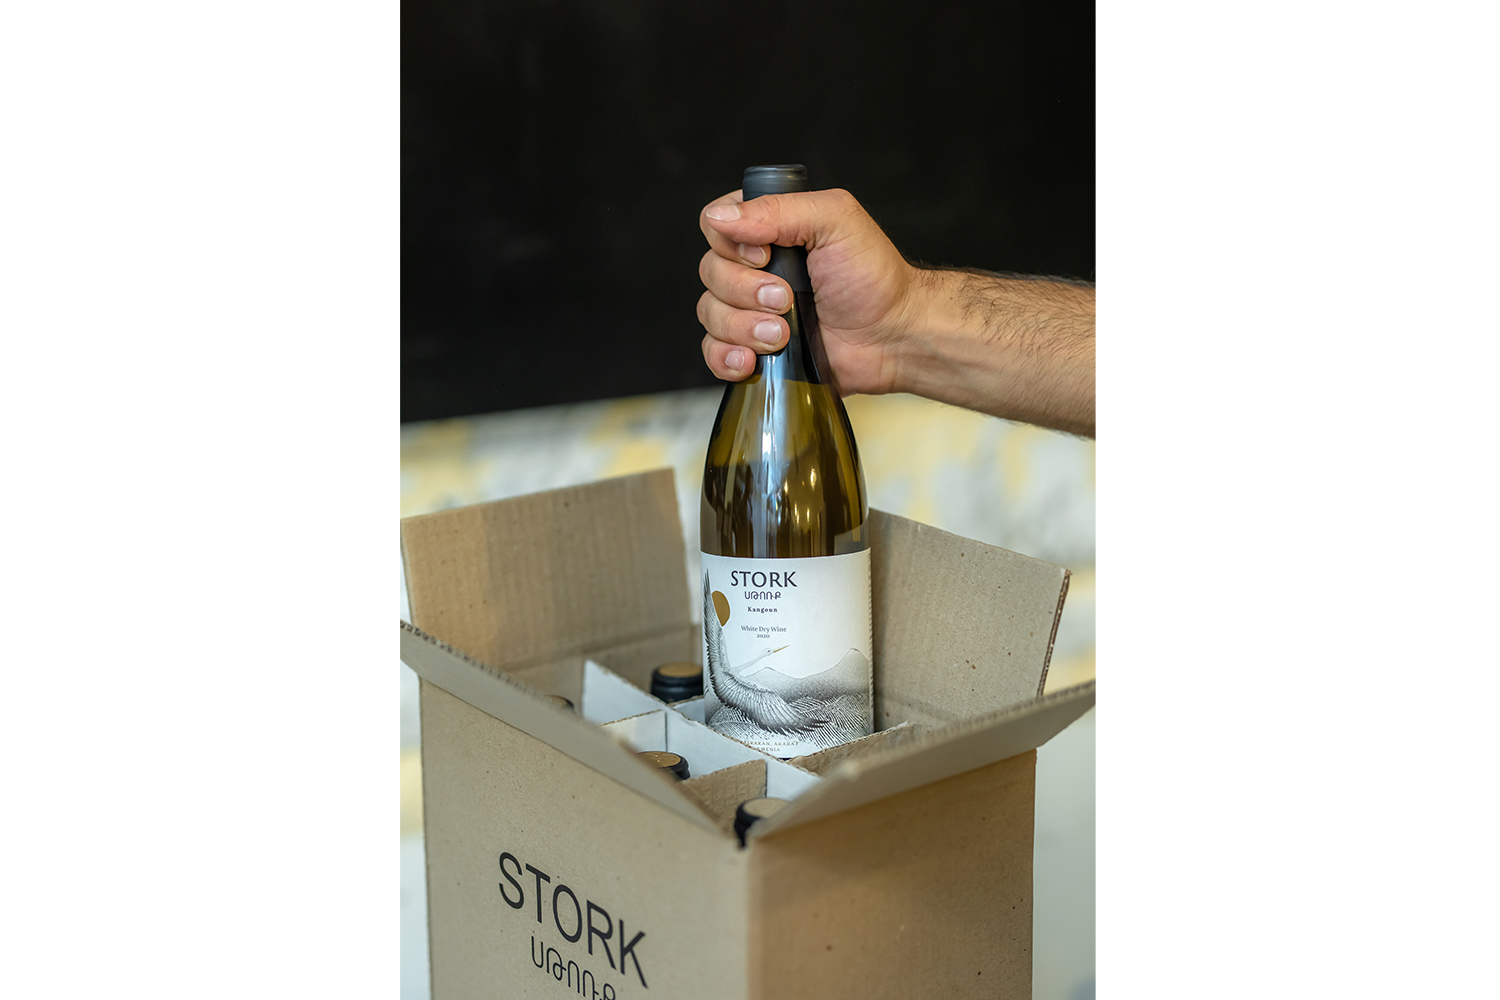 Հայկական Stork գինին դուրս է գալիս բրիտանական շուկա